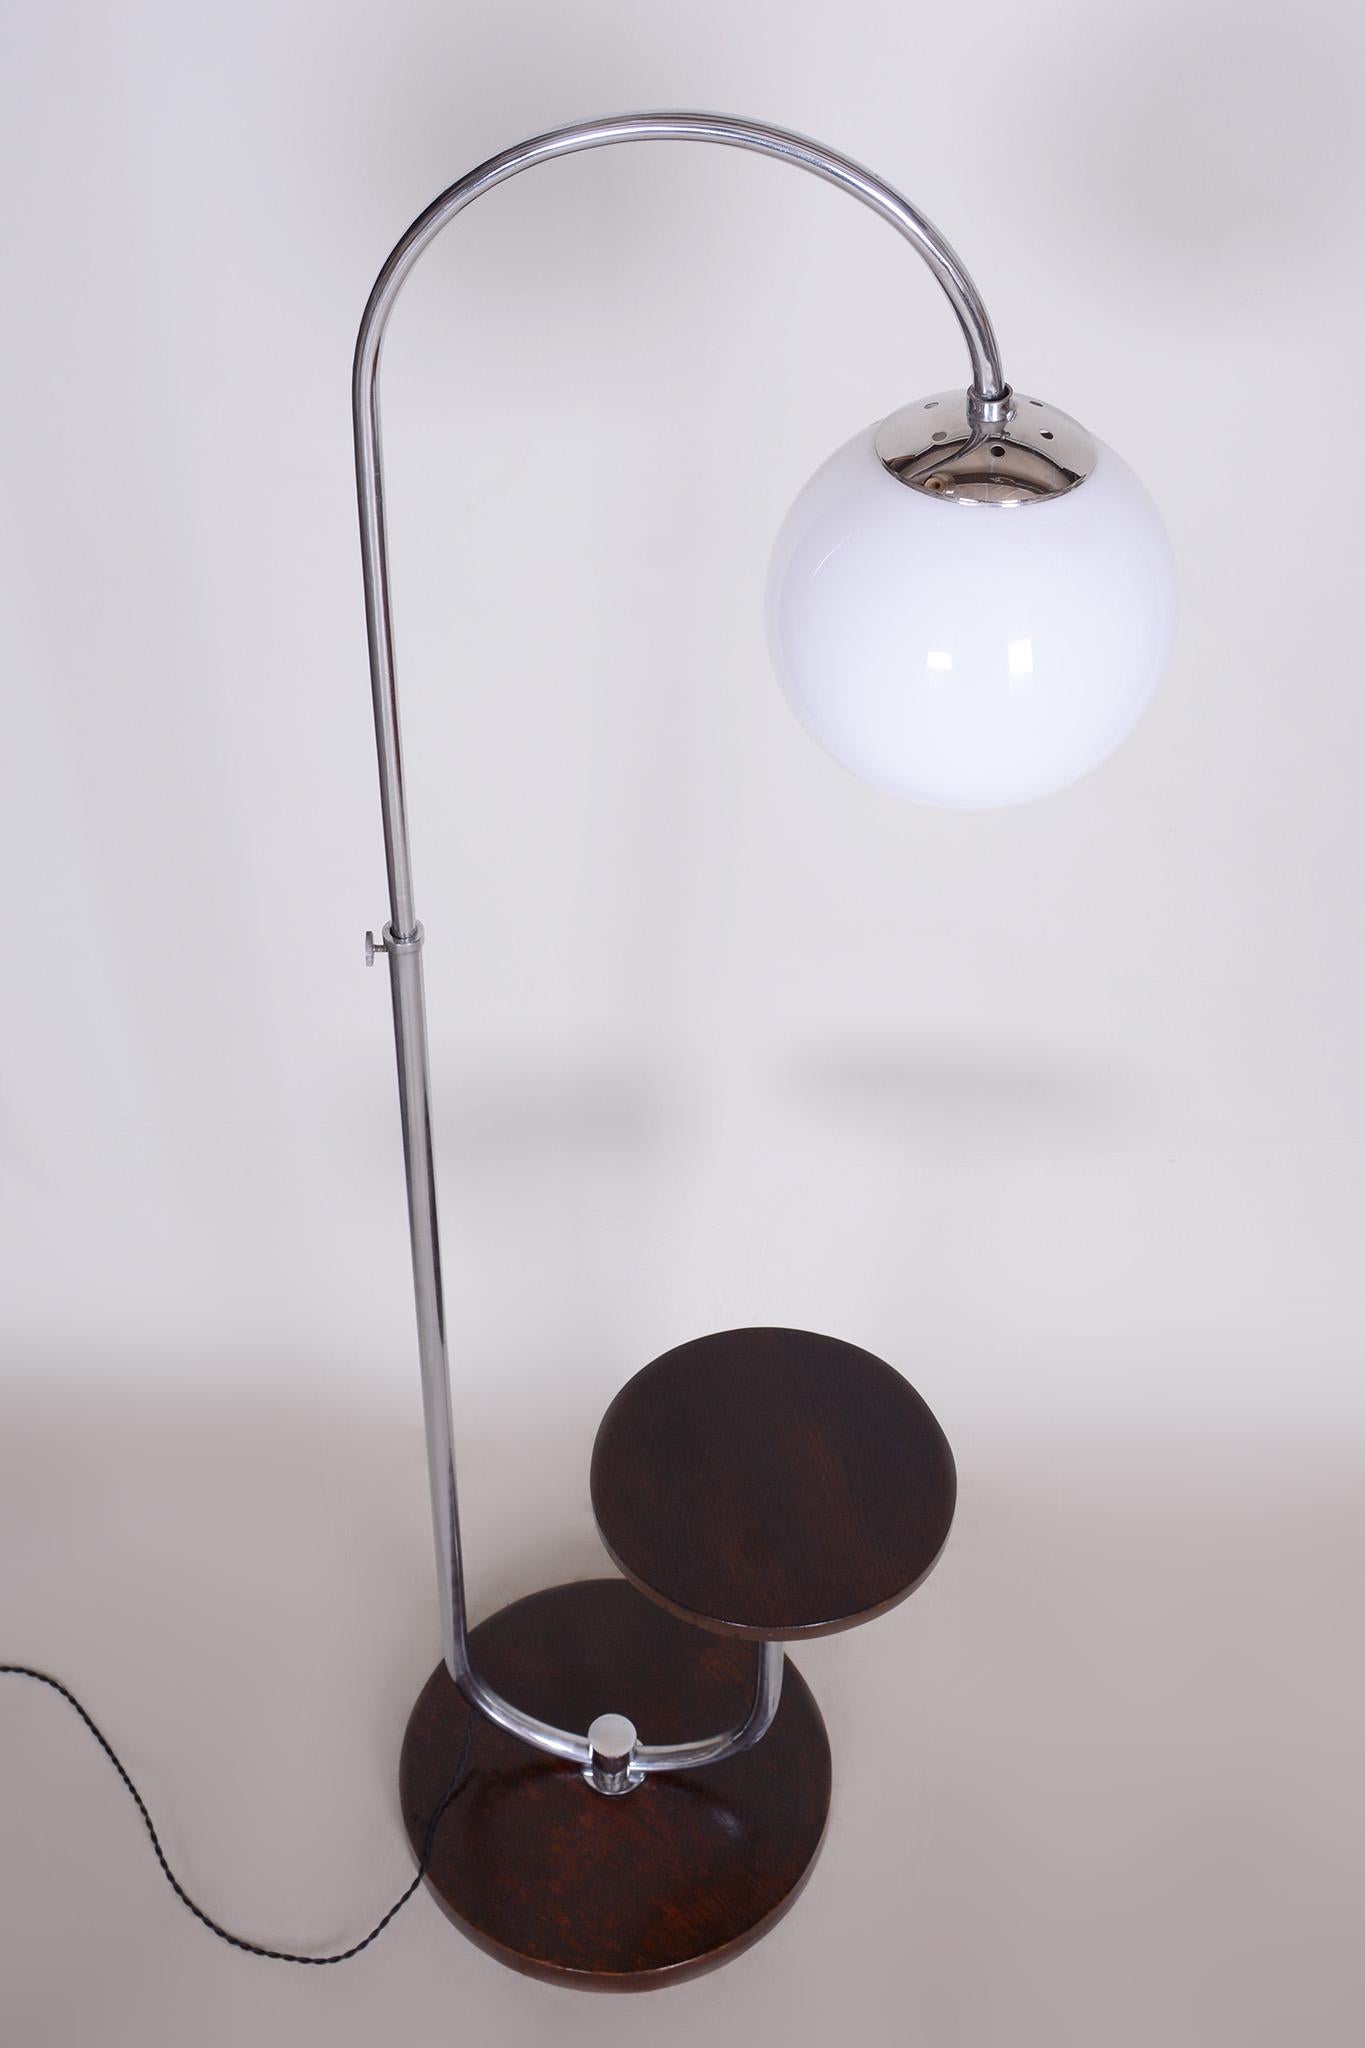 Art Deco Mucke Melder Floor Lamp Made in 1930s Czechia